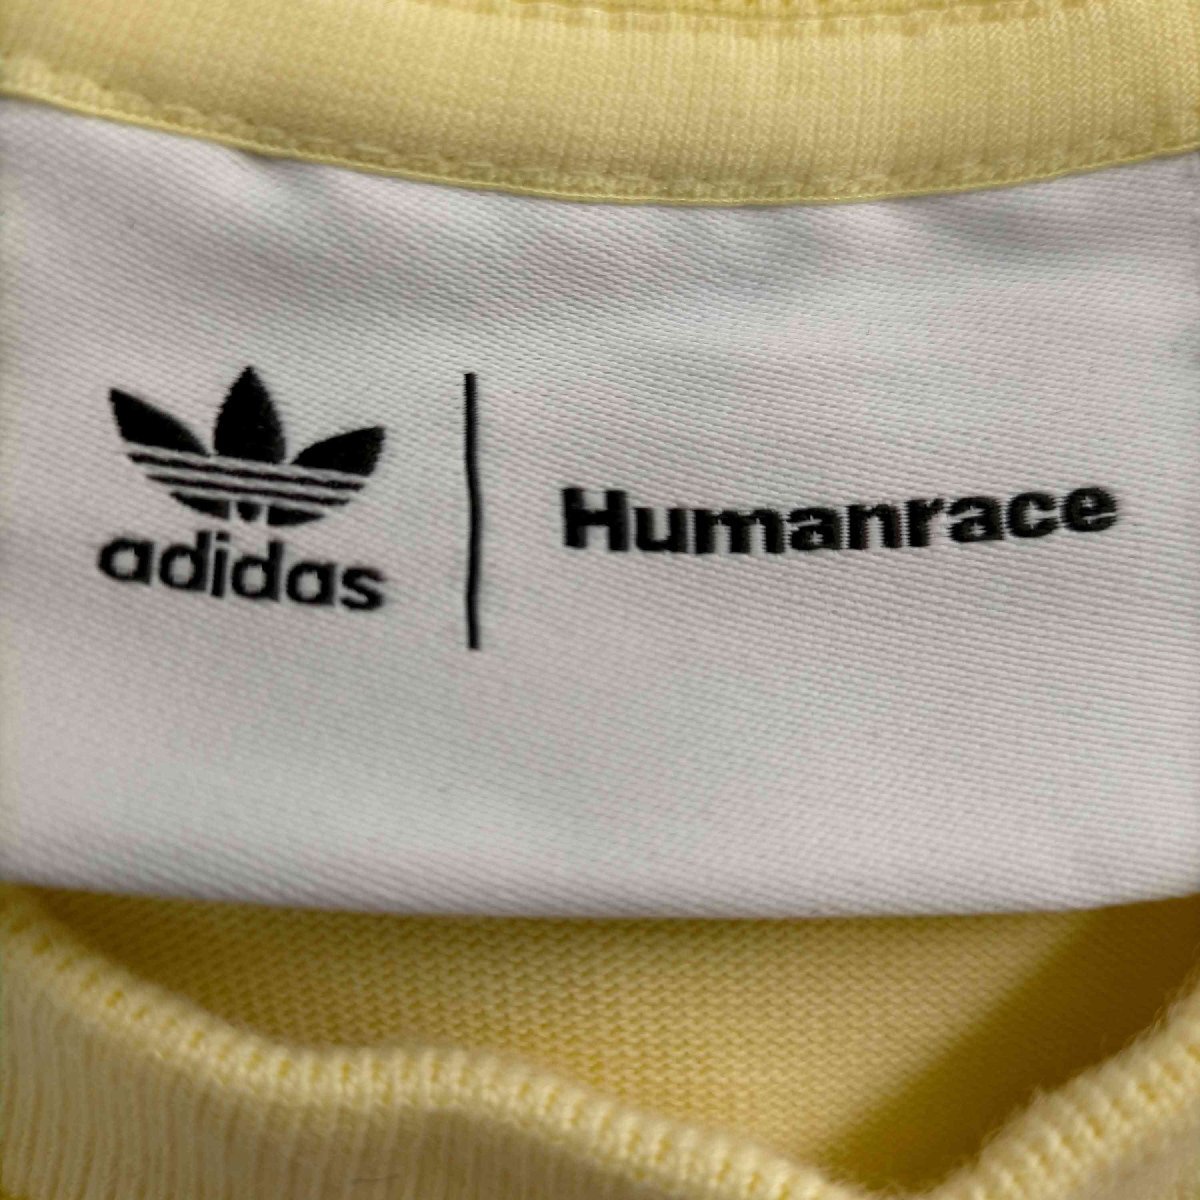 adidas Originals(アディダスオリジナルス) HUMANRACE Basics Lo 中古 古着 0943_画像6